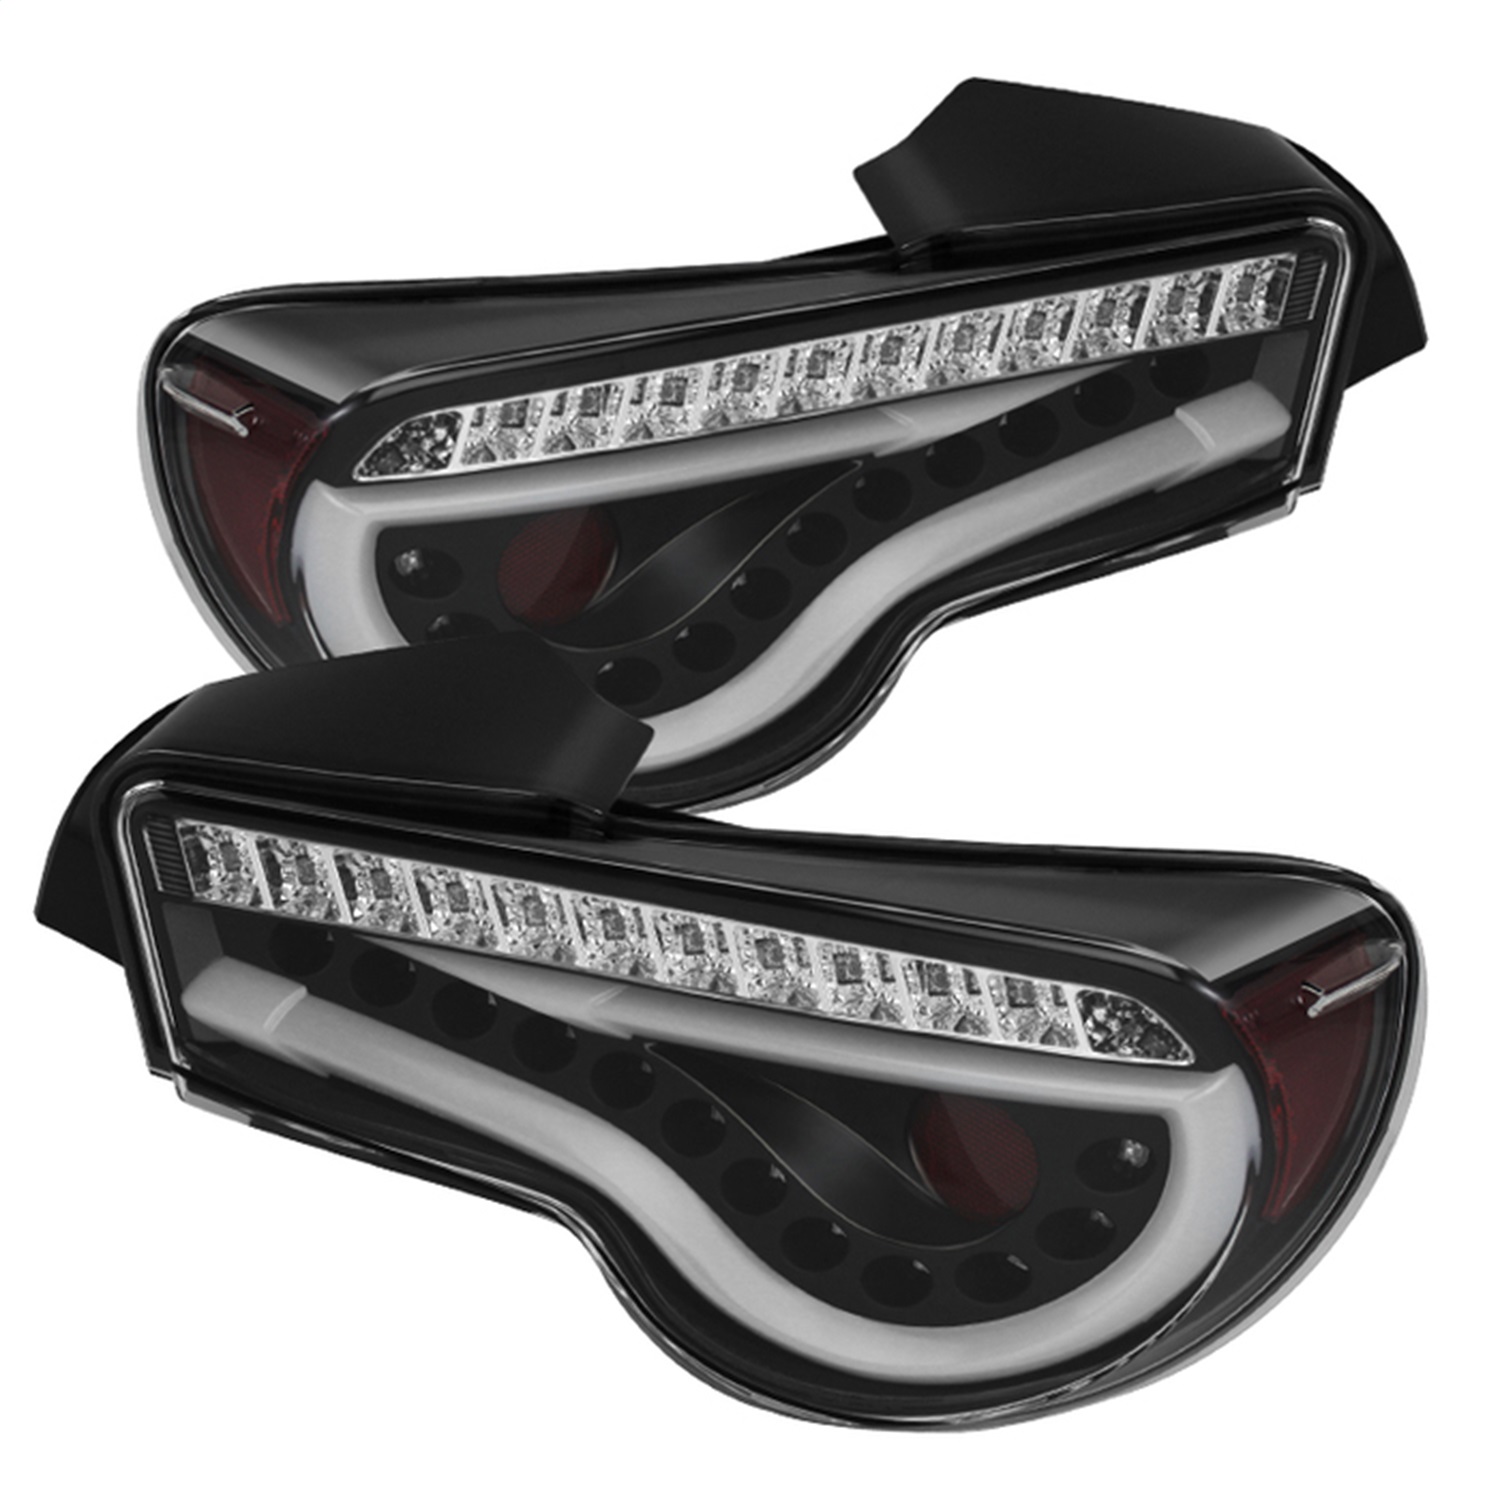 Spyder Auto 5072009 Light Bar LED Tail Lights Fits 13-16 BRZ FR-S